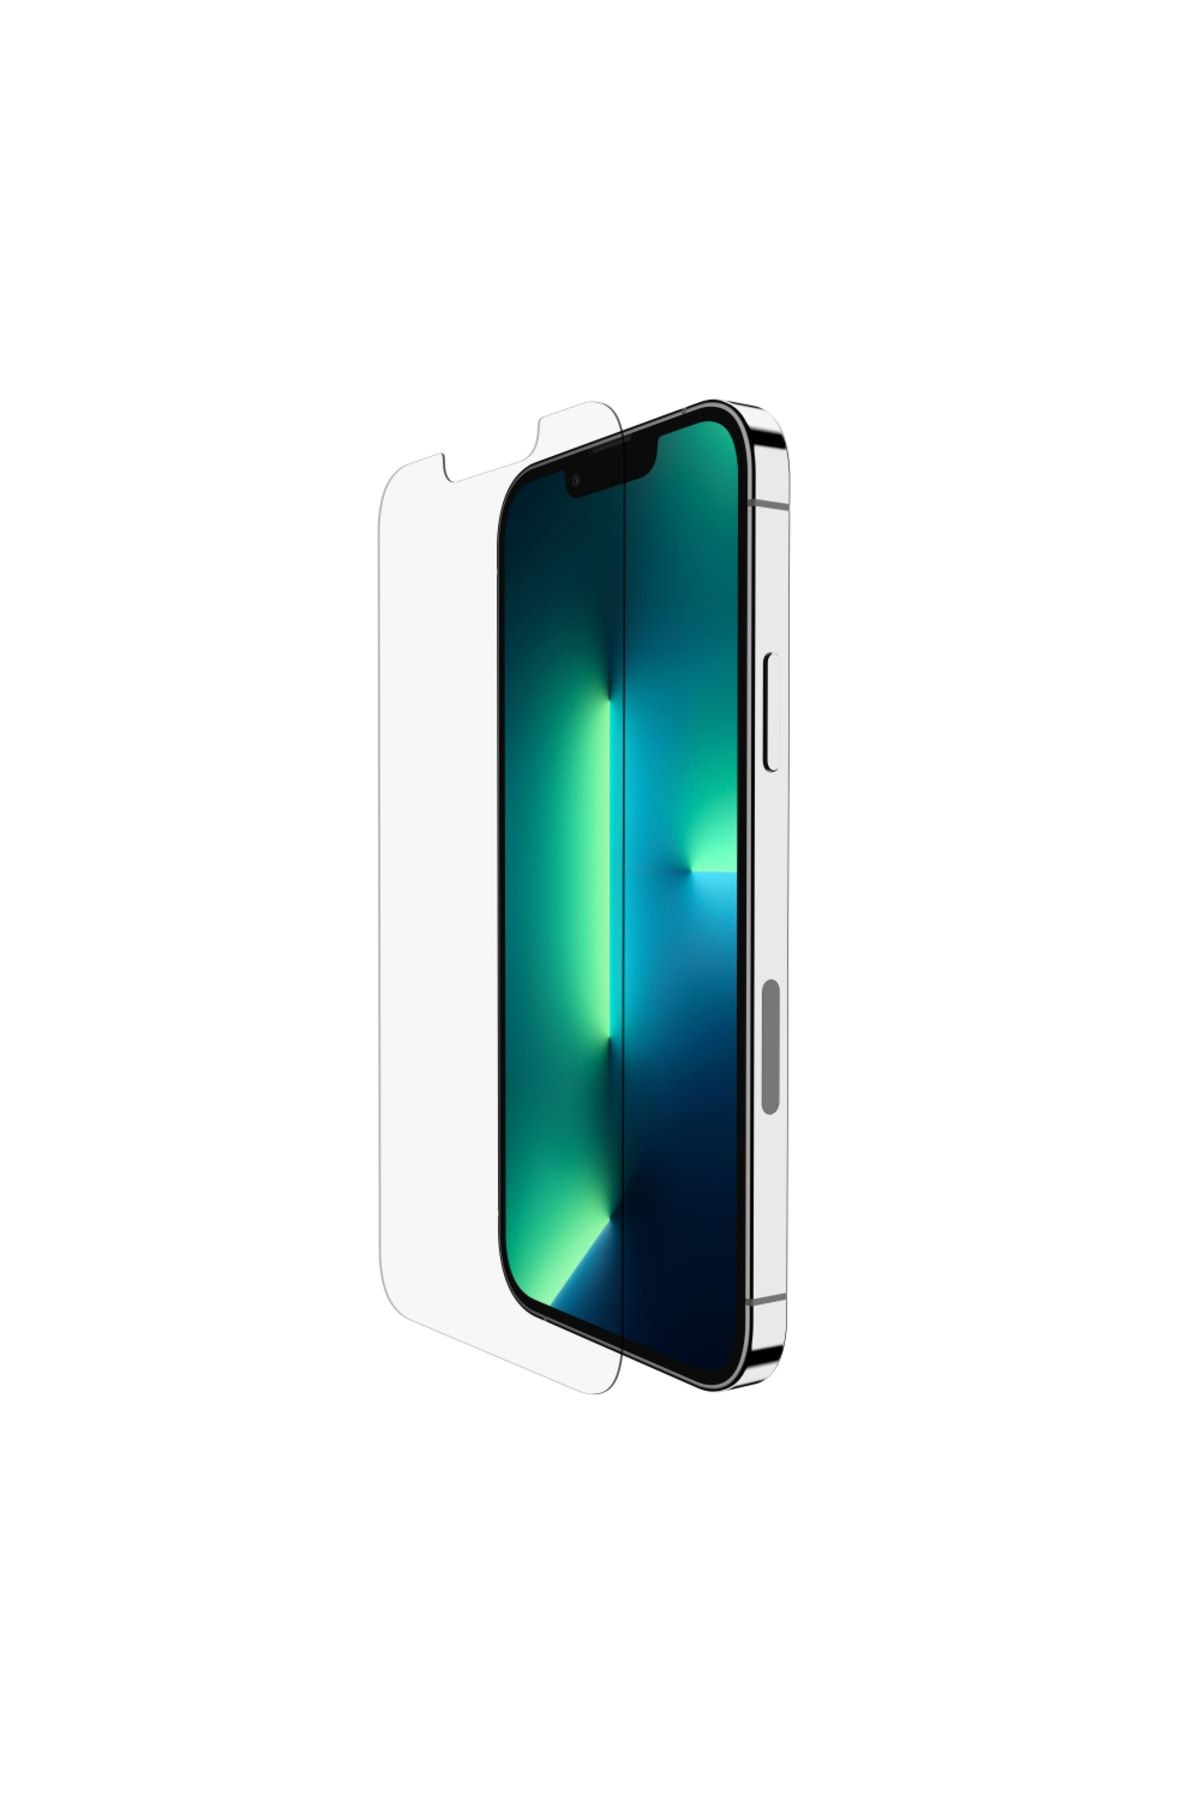 Belkin Iphone 13 Ve Iphone 13 Pro Uyumlu Tempered Glass Ekran Koruyucu 2'li Set - Ova090zz